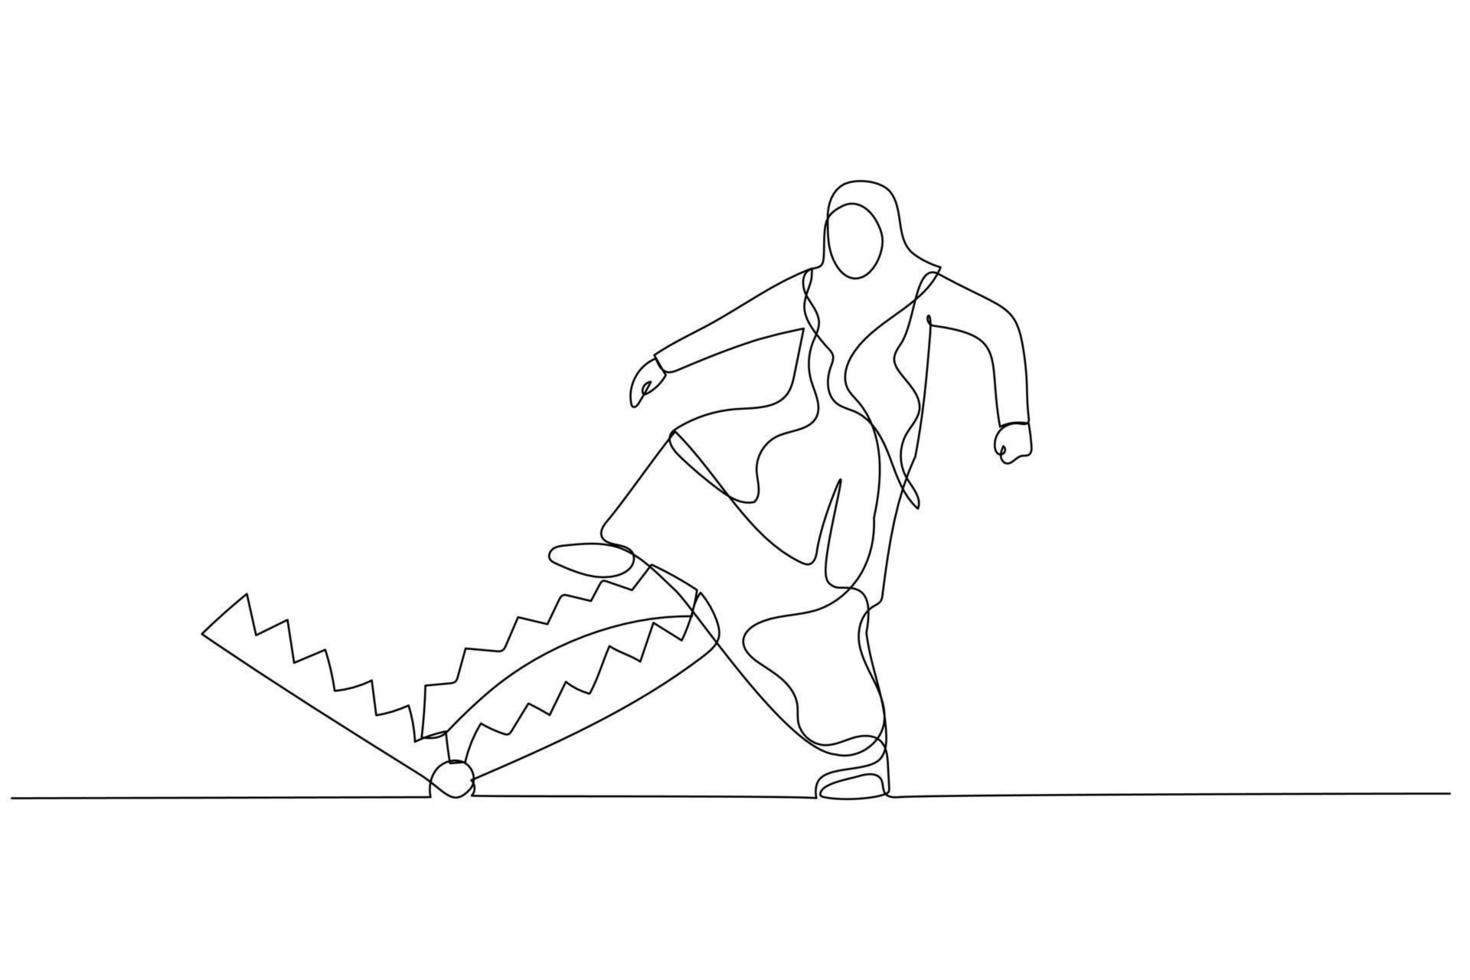 illustration av muslim företag kvinna försiktigt promenad in i mus fälla begrepp företag risk. enda kontinuerlig linje konst stil vektor